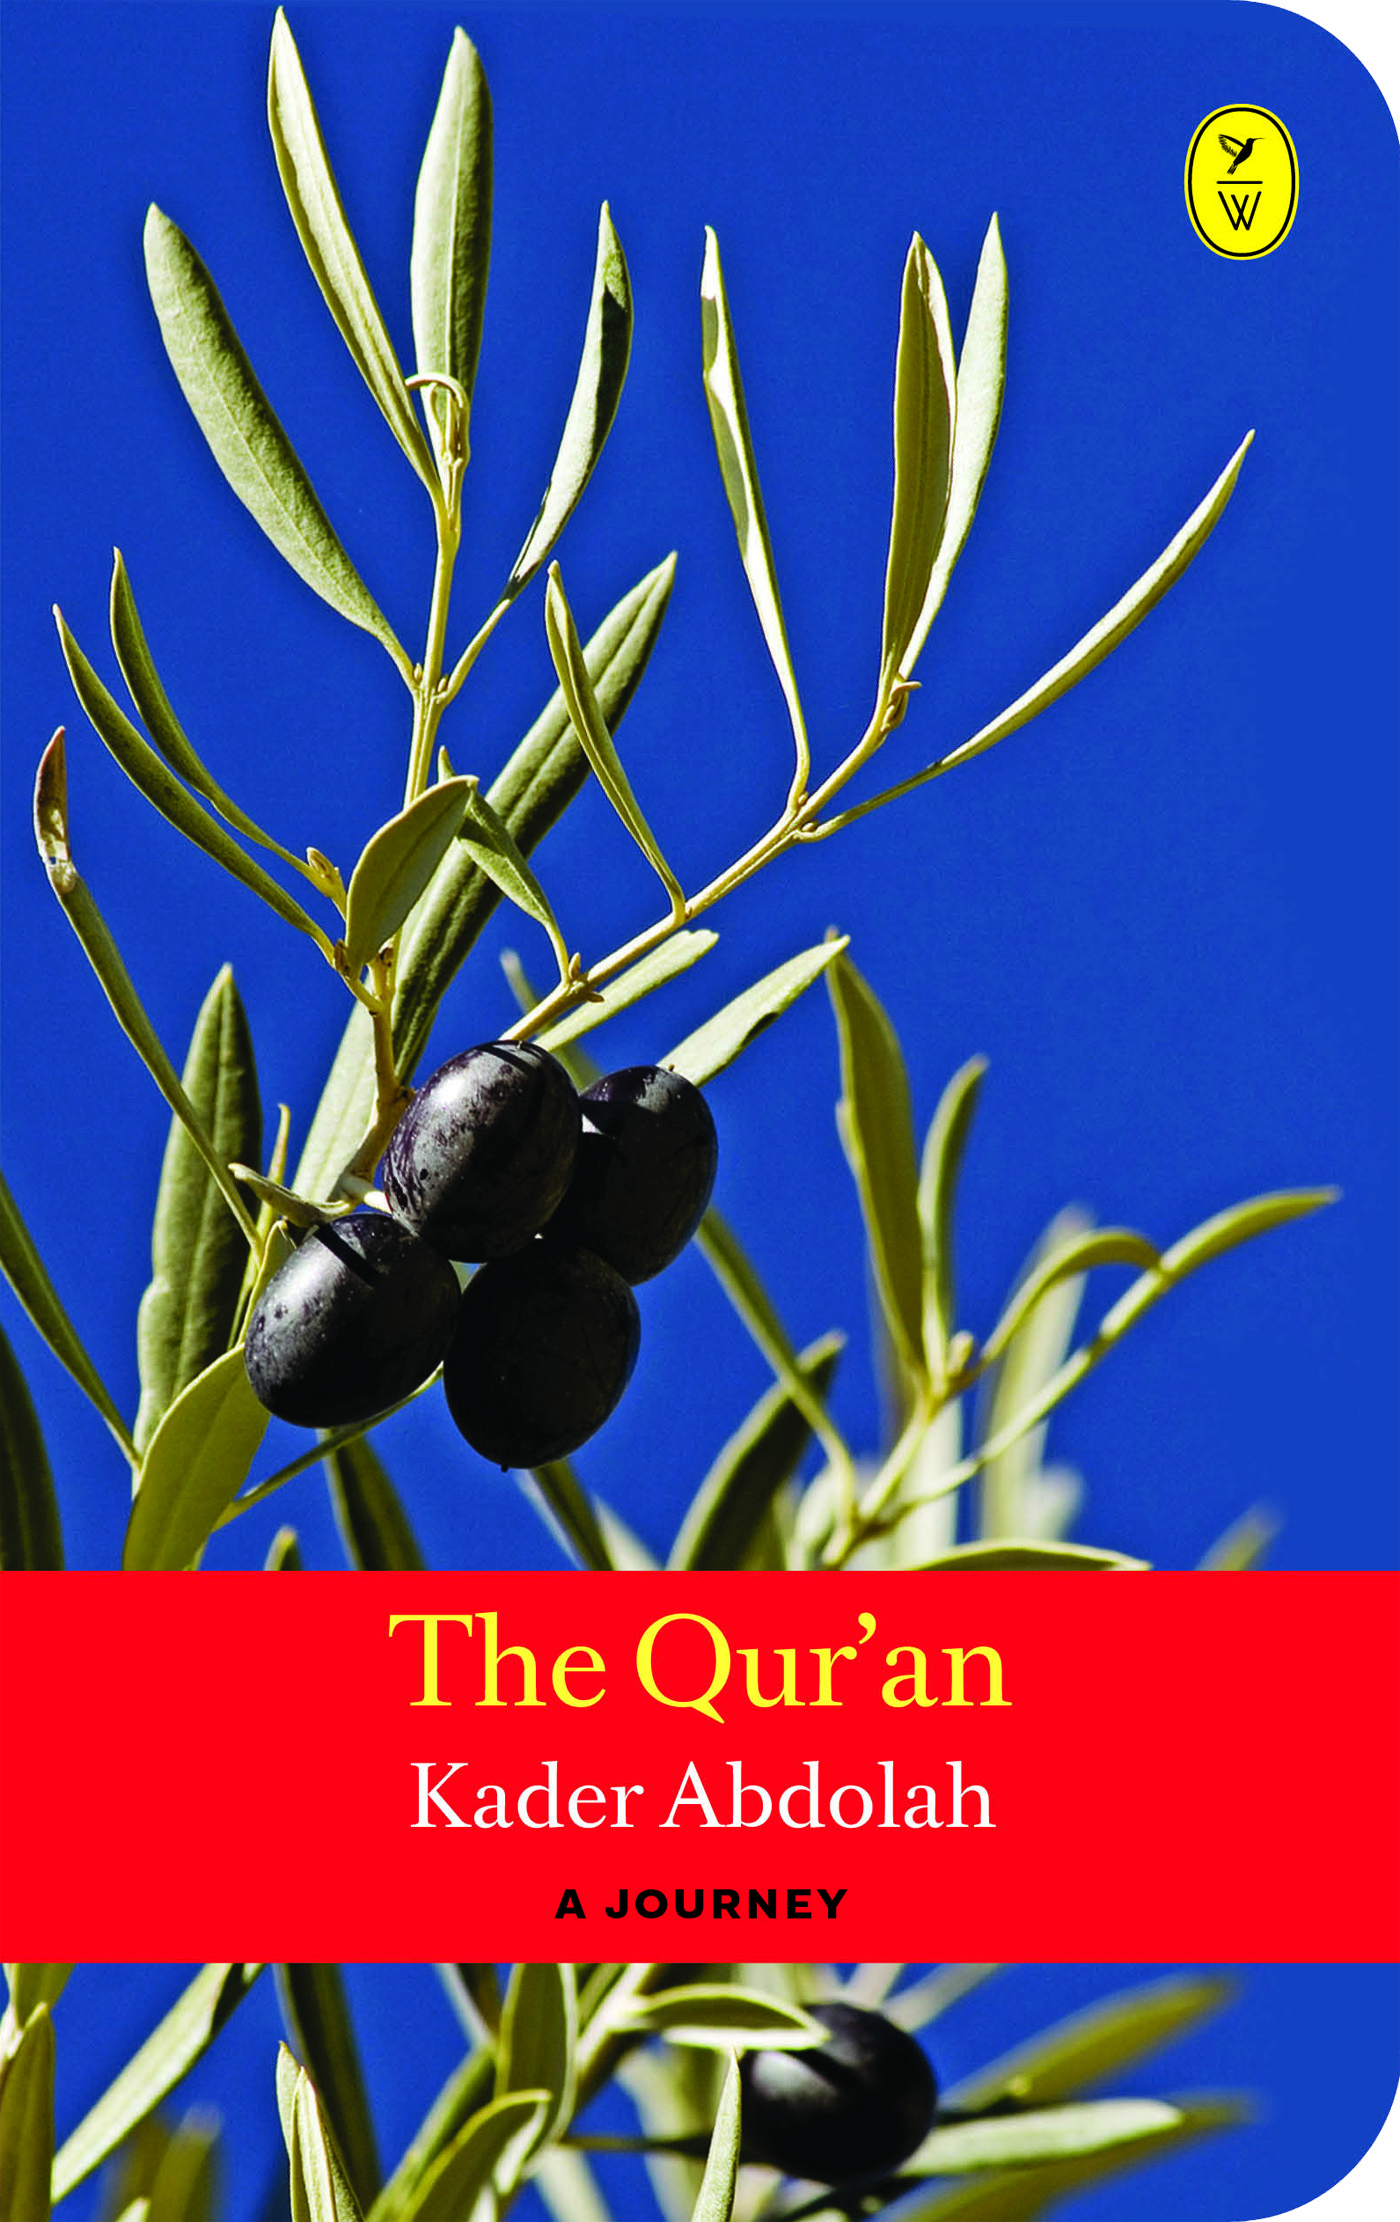 The qur'an